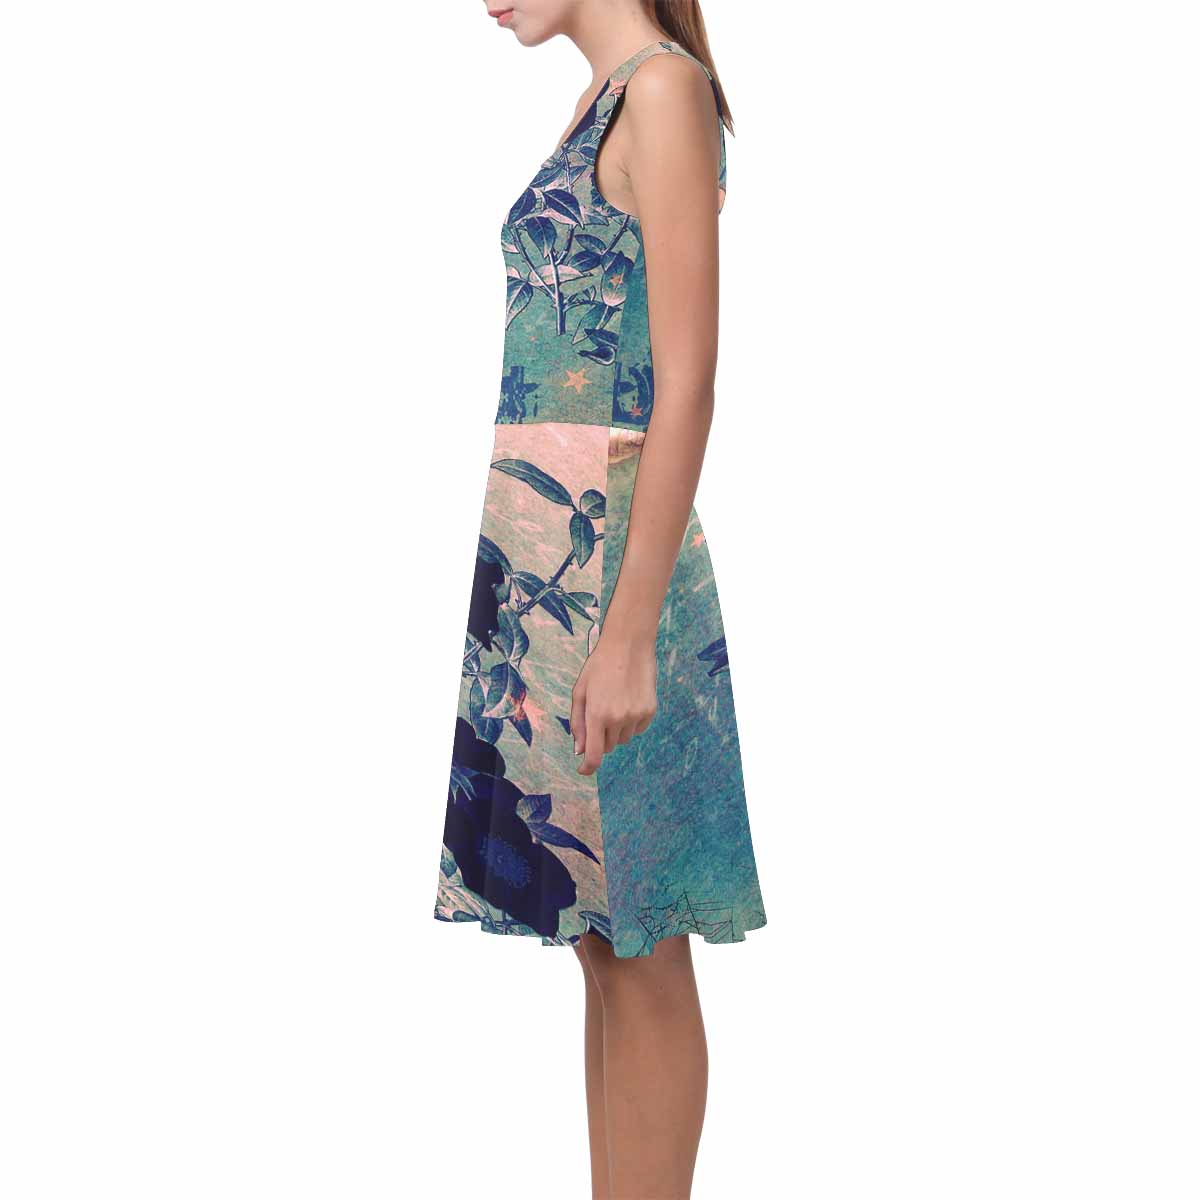 Antique General summer dress, MODEL 09534, design 15